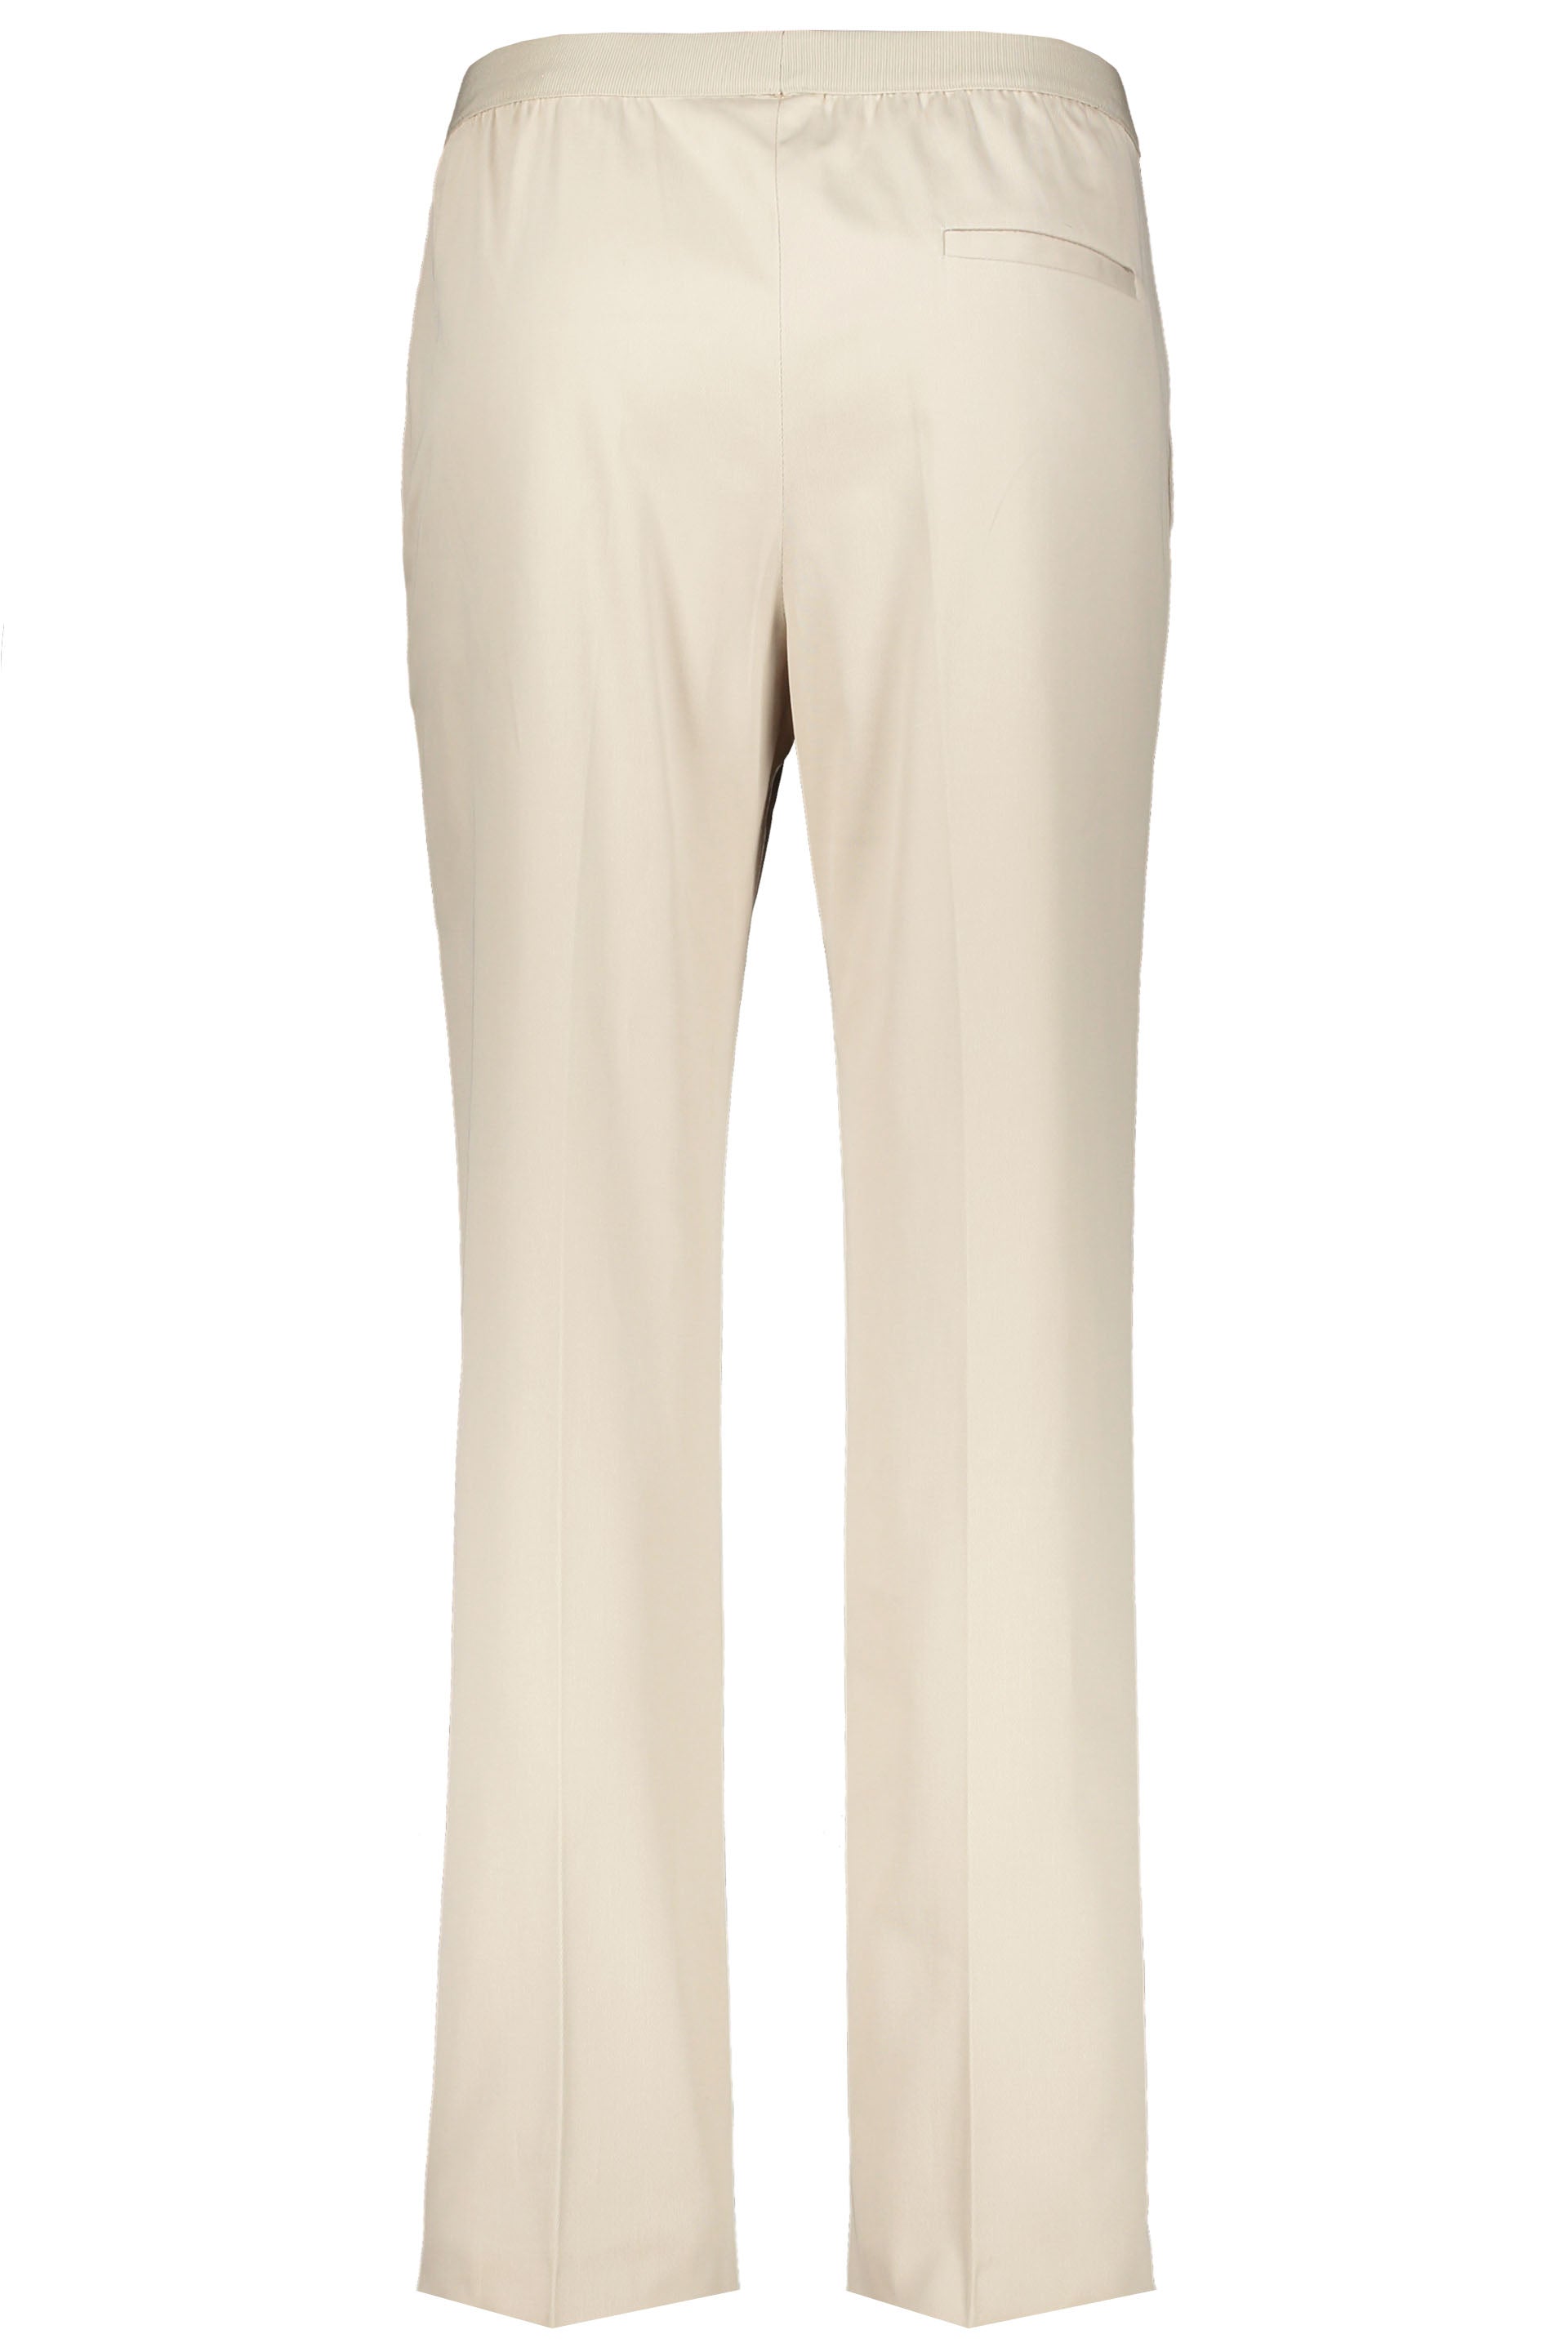 Agnona-OUTLET-SALE-Cotton-trousers-Hosen-ARCHIVE-COLLECTION-2_25104a99-be8c-46ac-9ec1-d2a2b2f0b73a.jpg